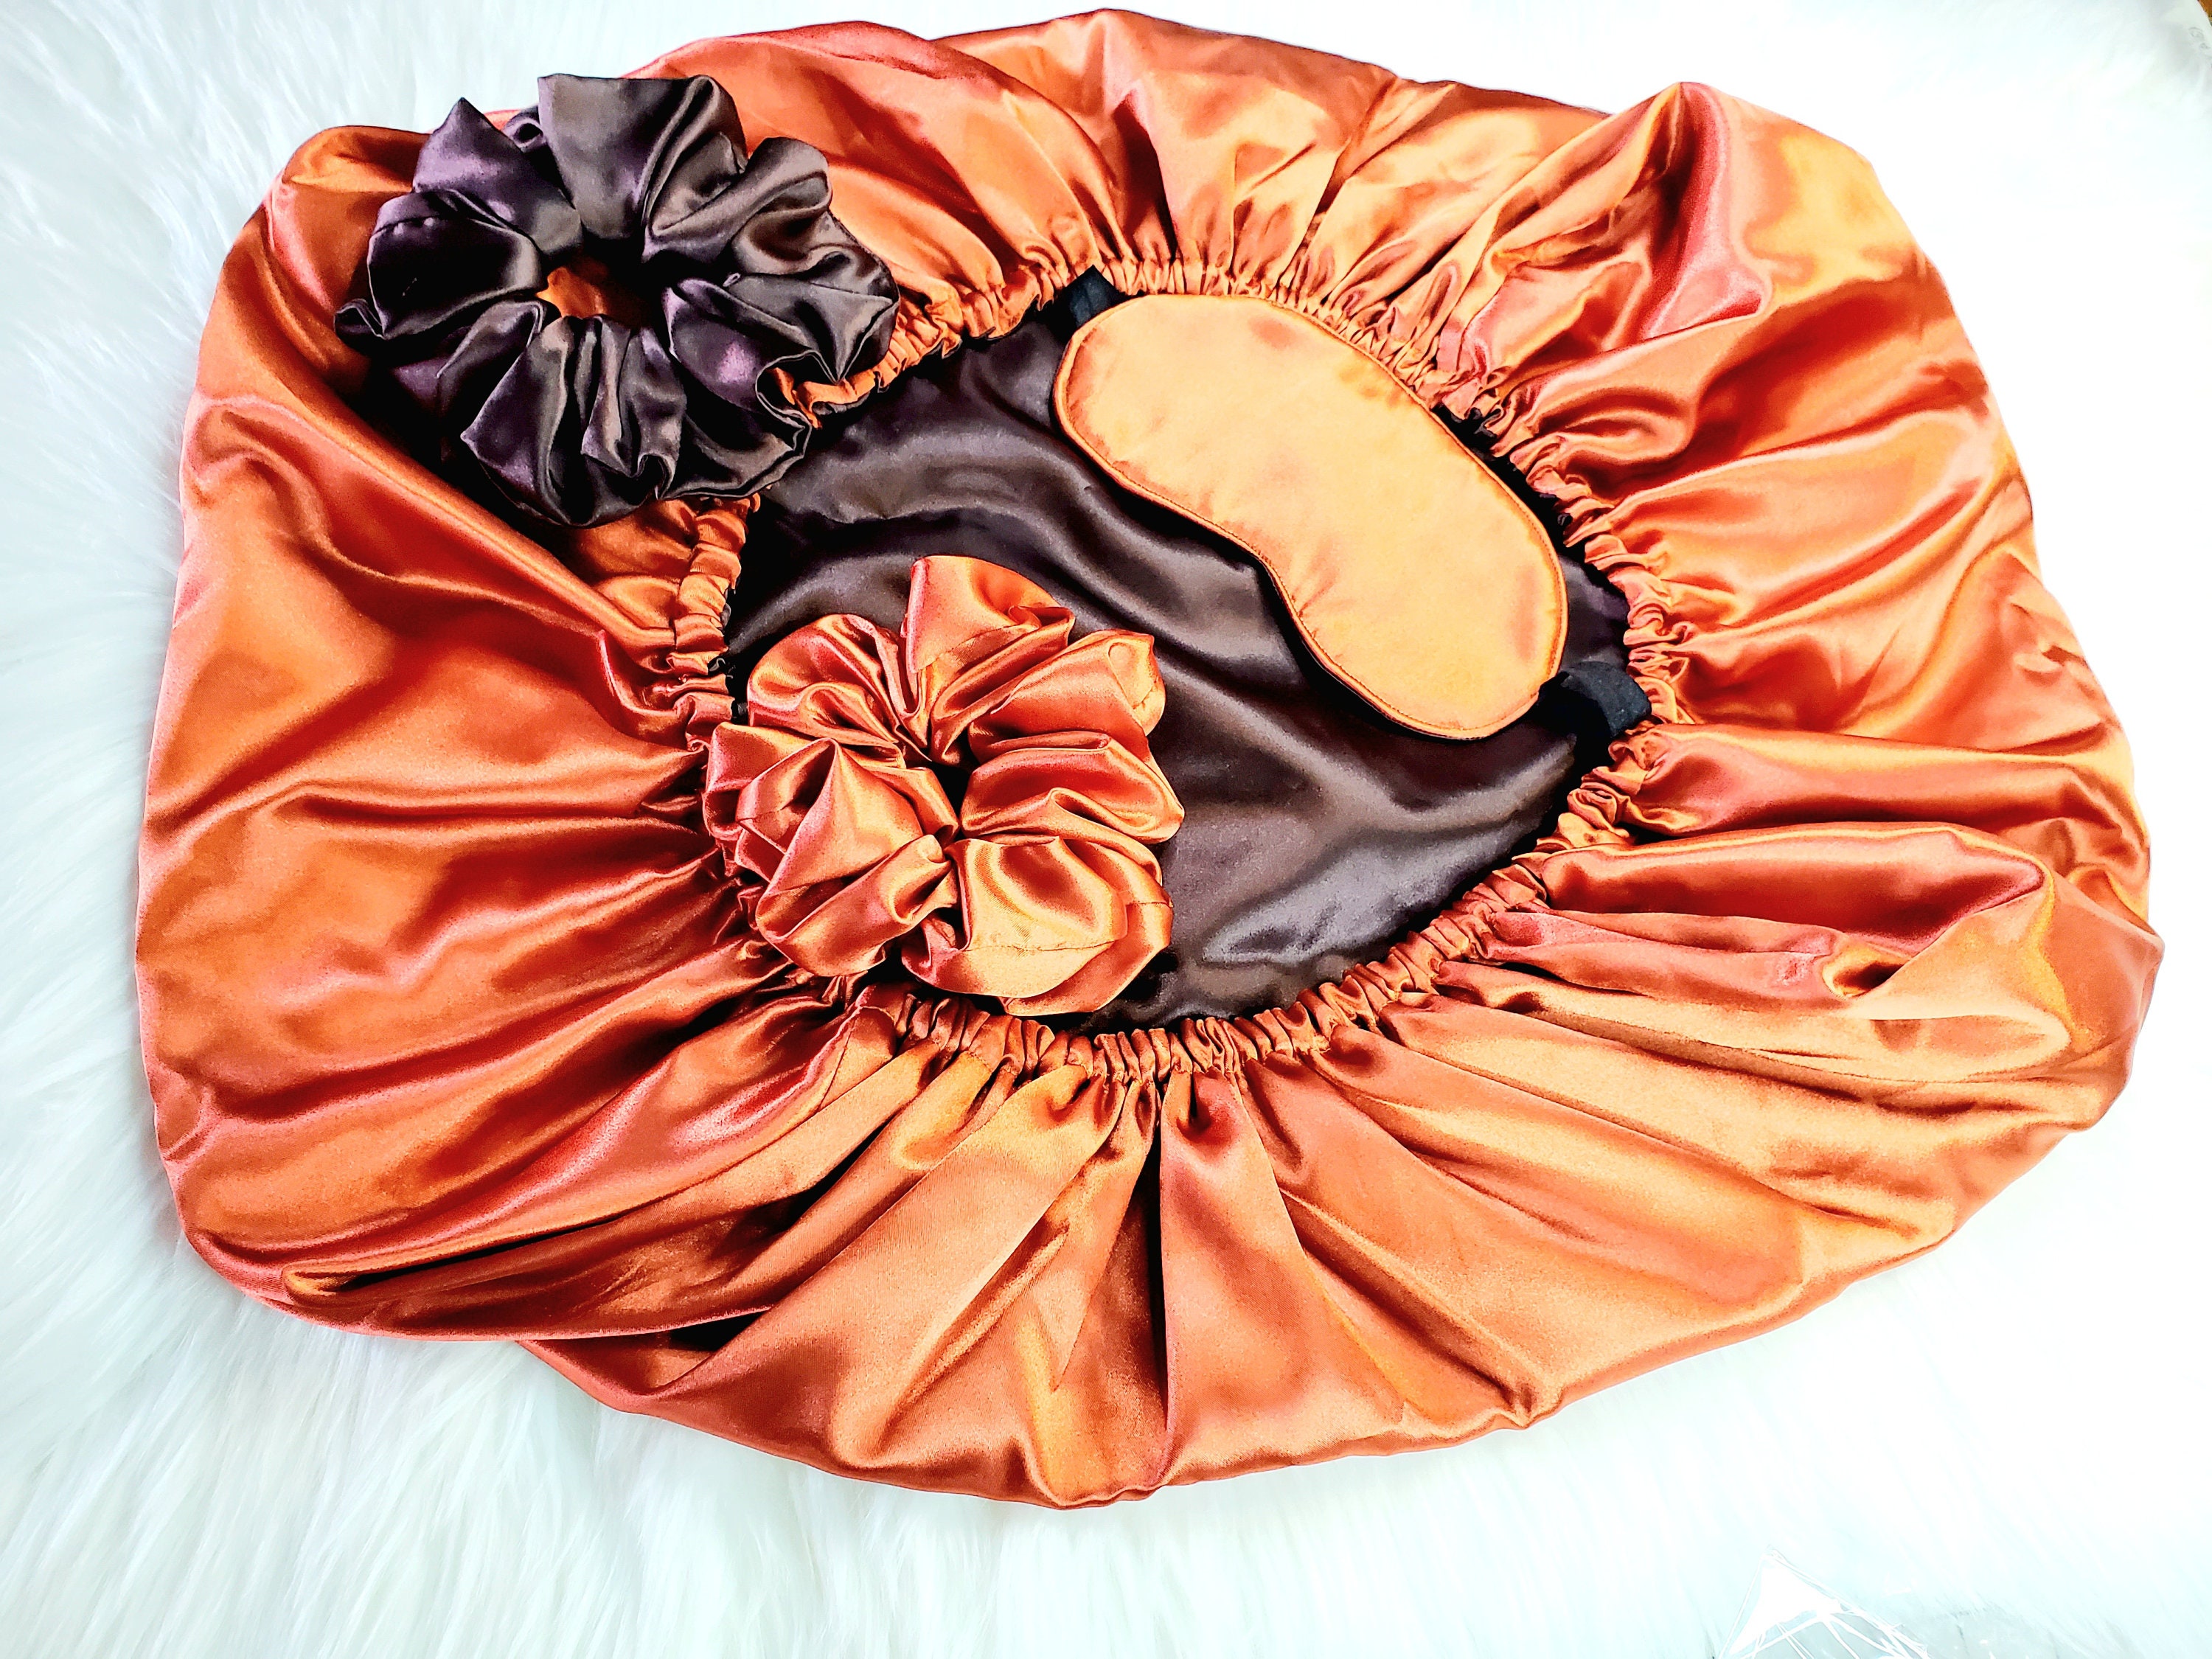 Mokalunga Bonnet Coton Bliss - Jaune-Orange - Accessoires textile